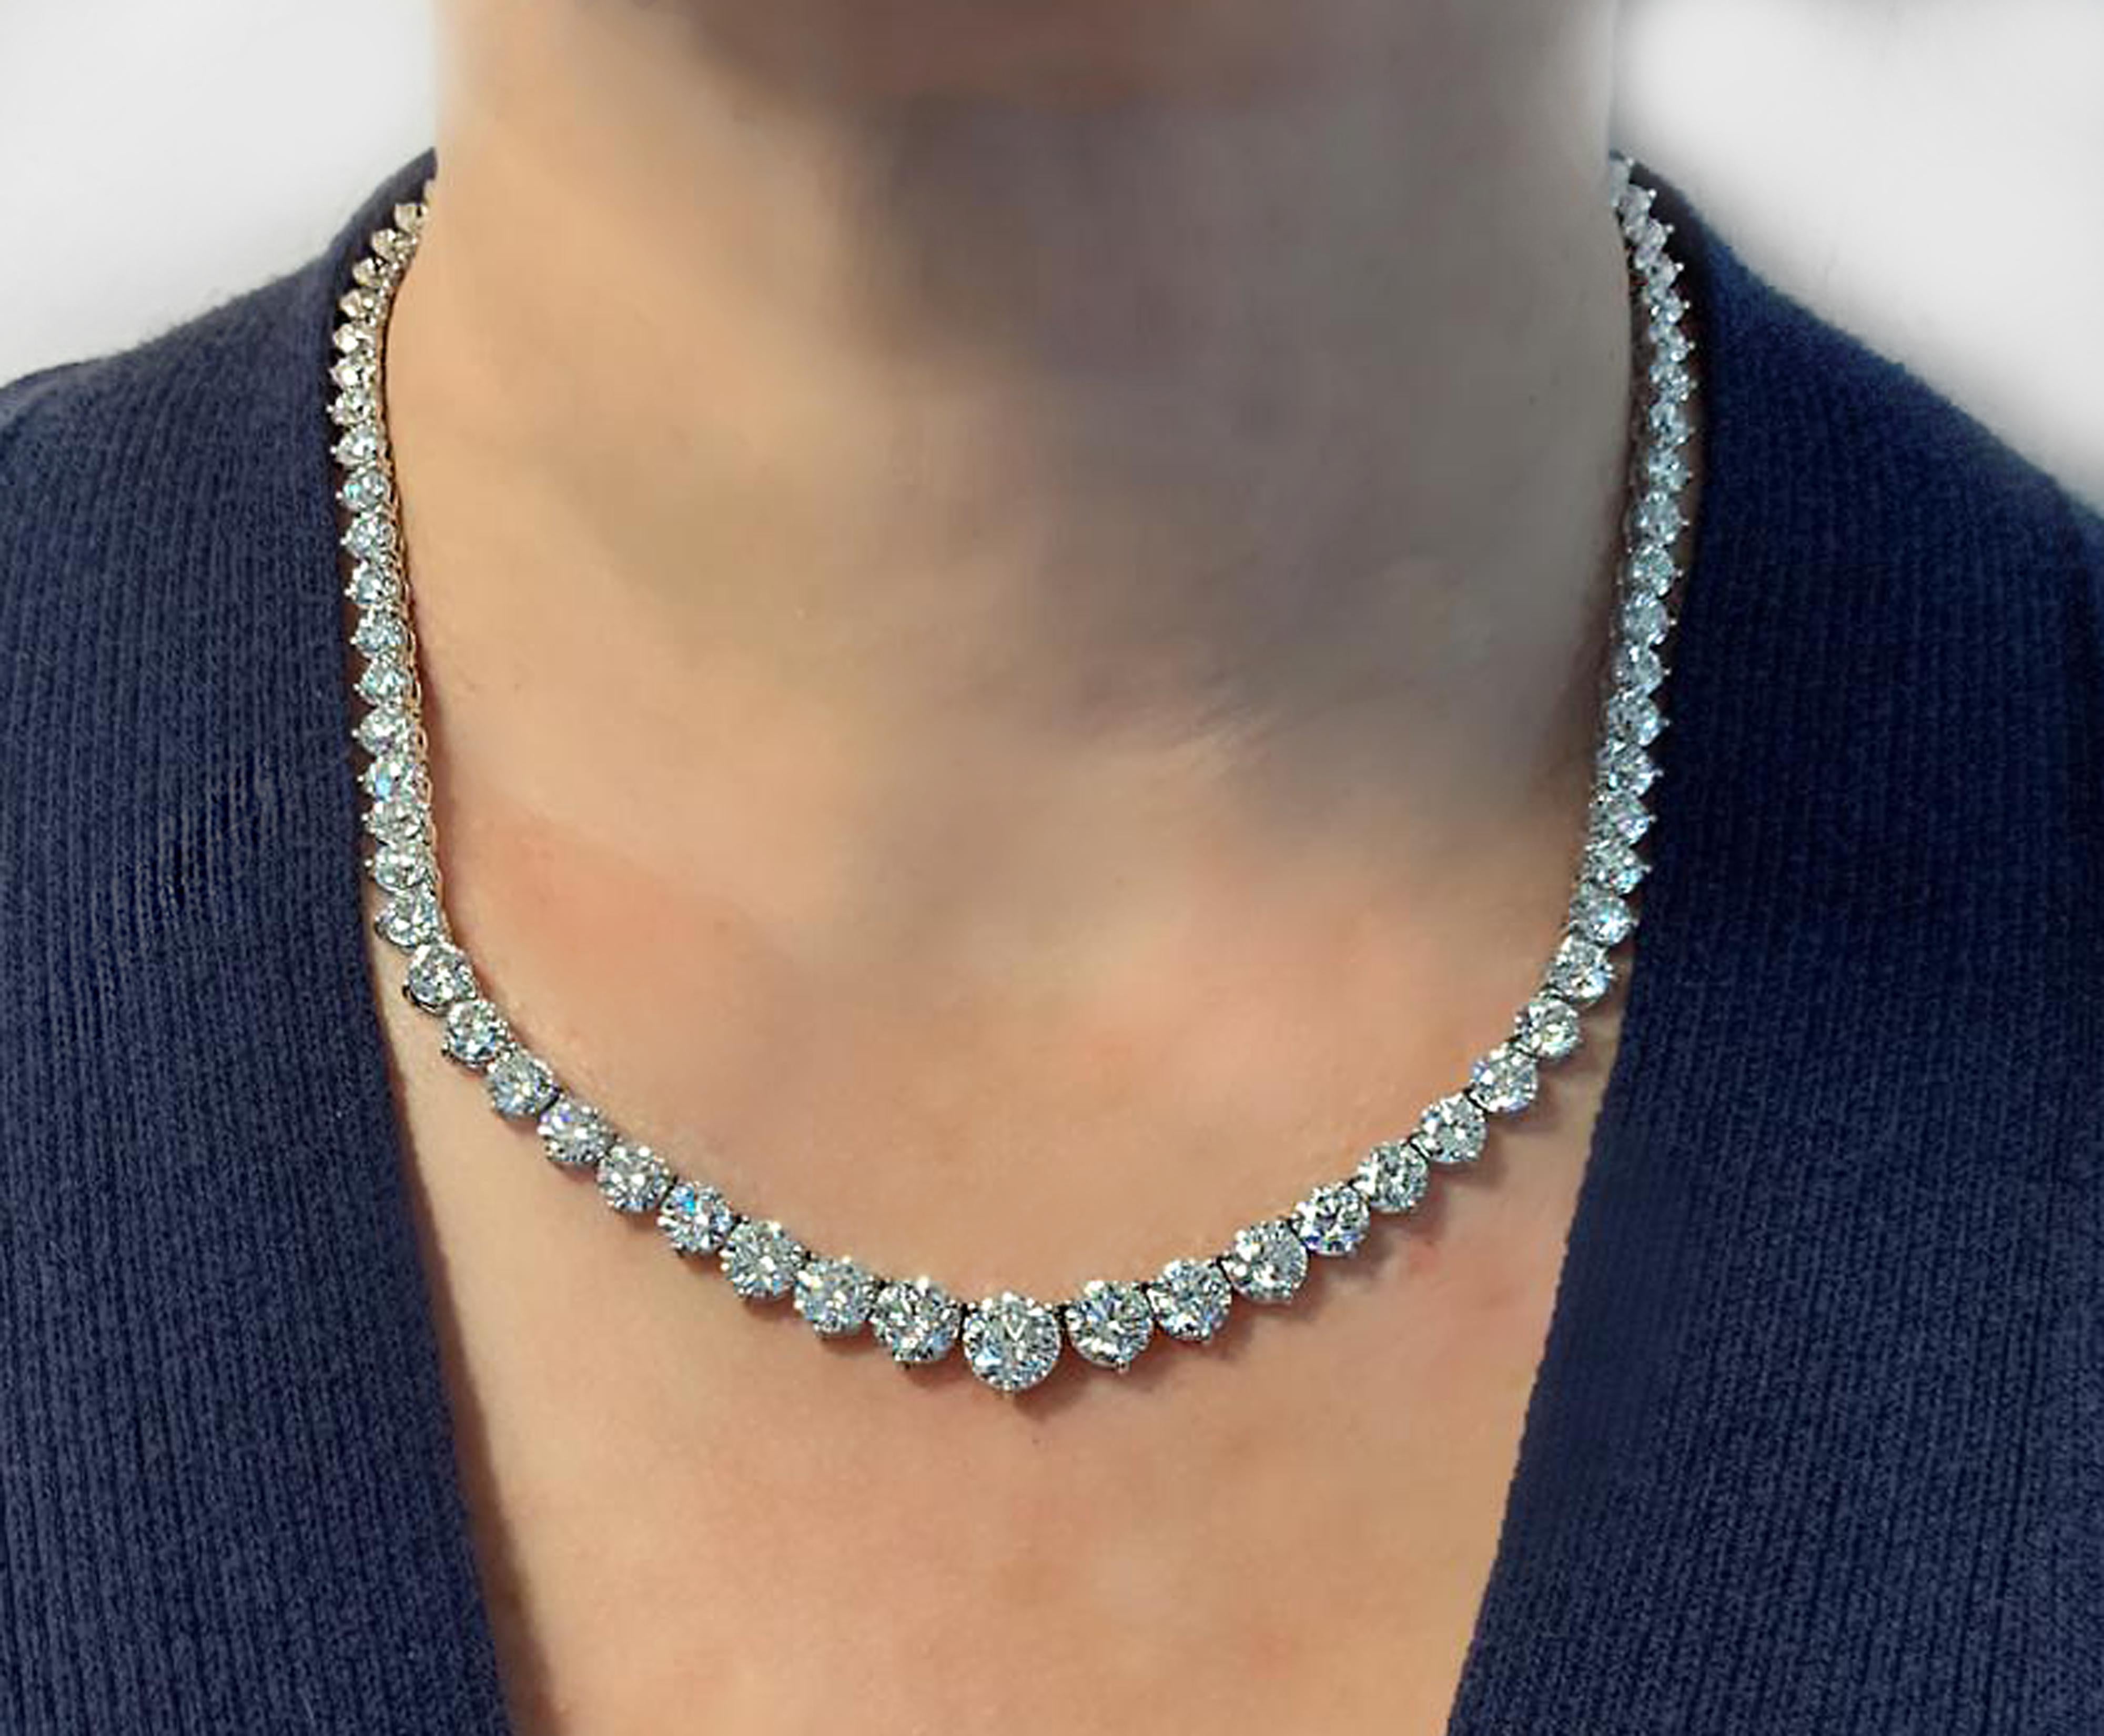 Vivid Diamonds 32 Carat Riviere Necklace In New Condition For Sale In Miami, FL